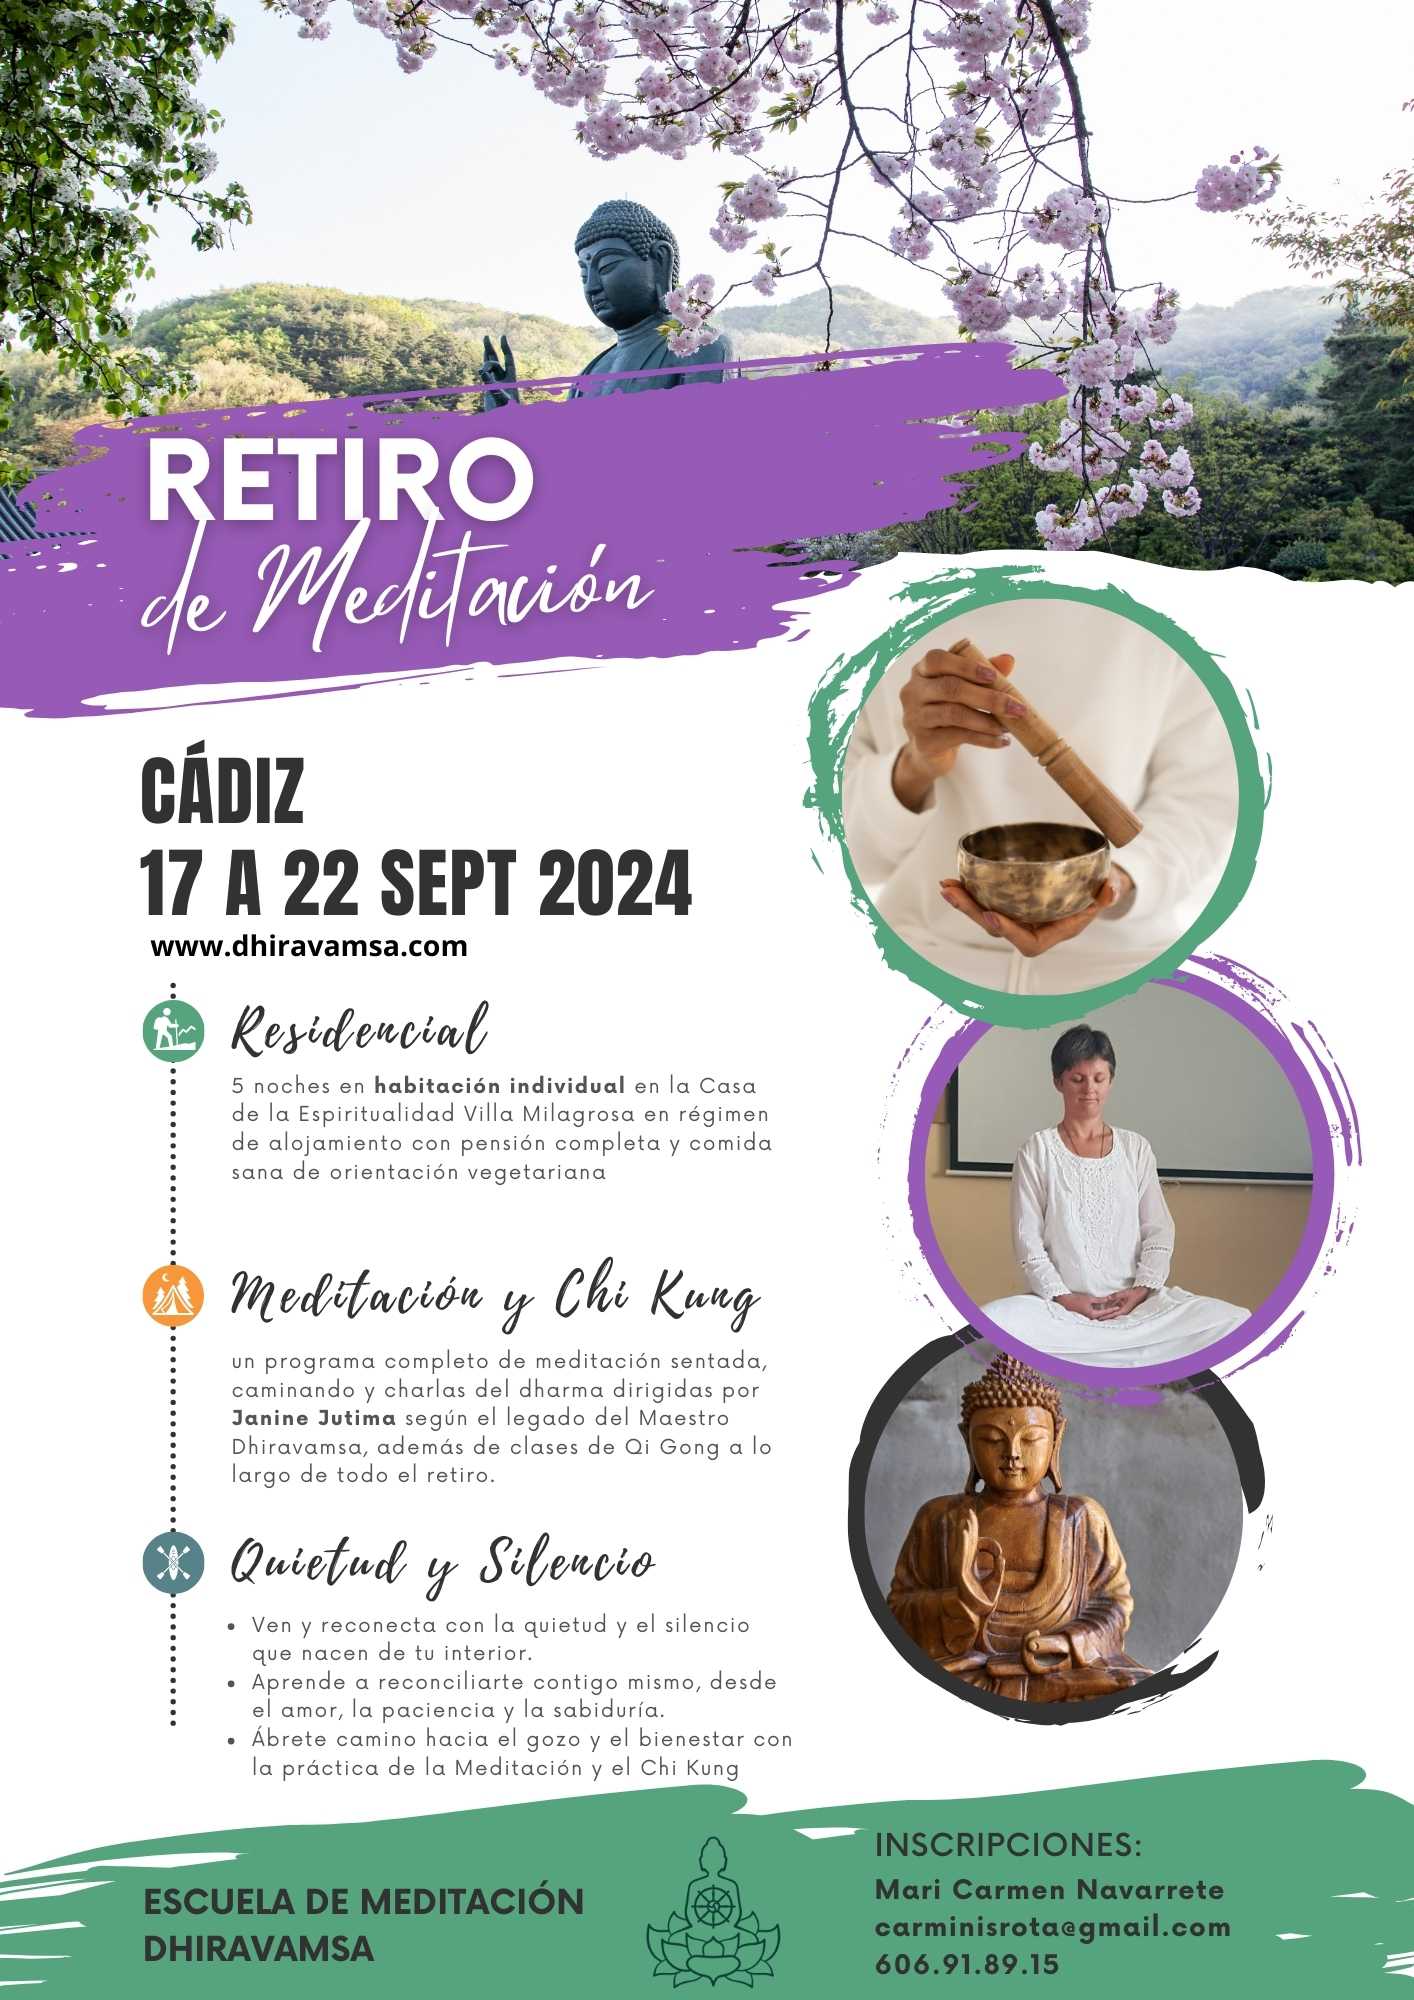 Retiro Cádiz 2024